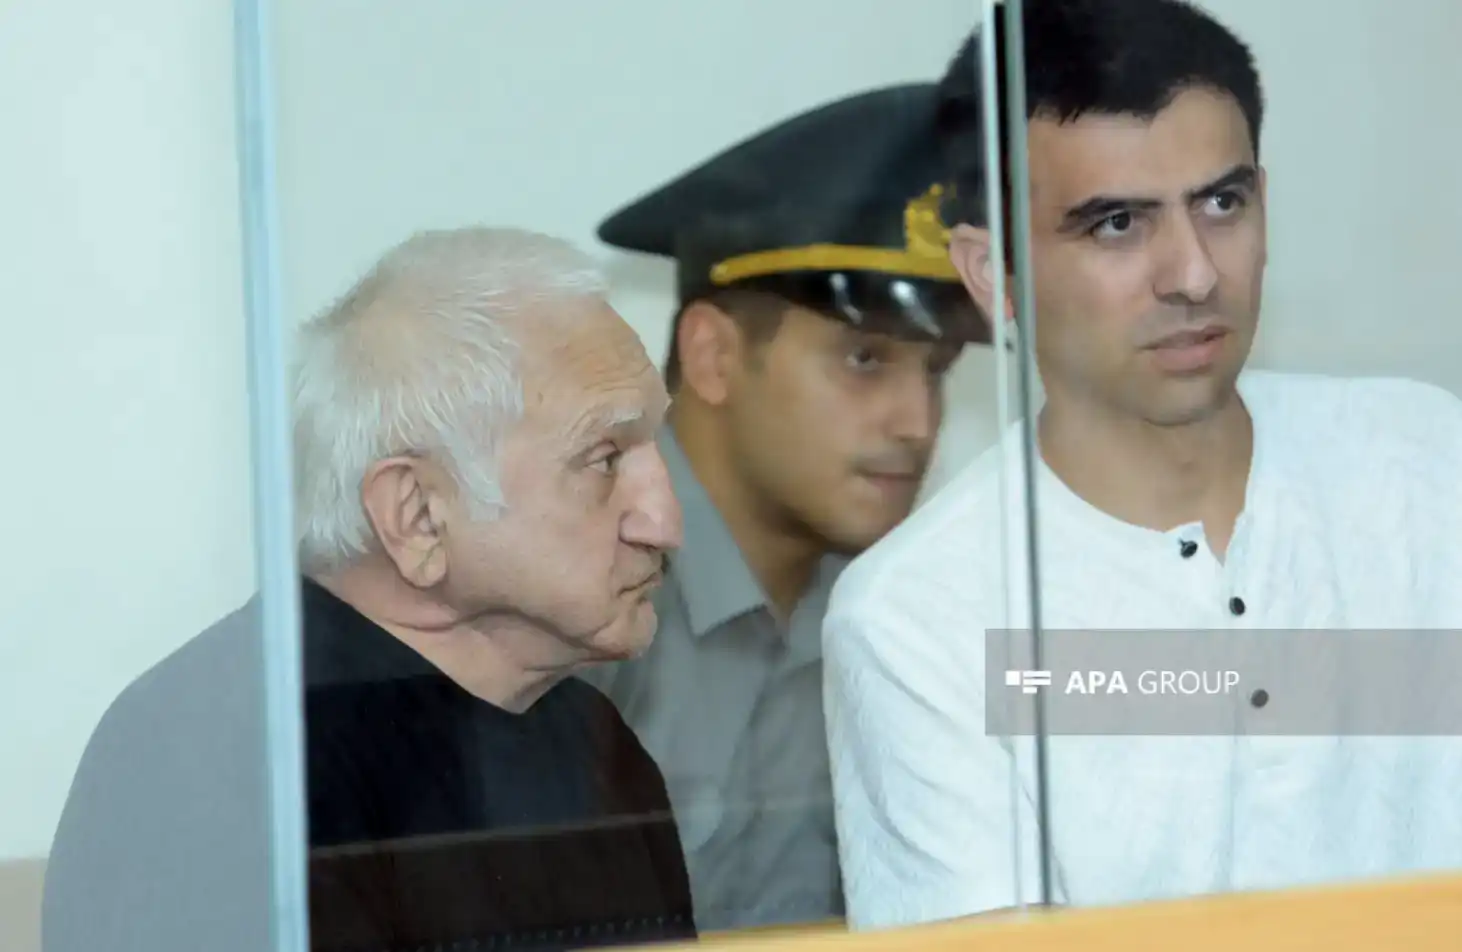 Պաքուի դատարանը Ռաշիտ Բեգլարեանը դատապարտած է 15 տարուան ազատազրկման